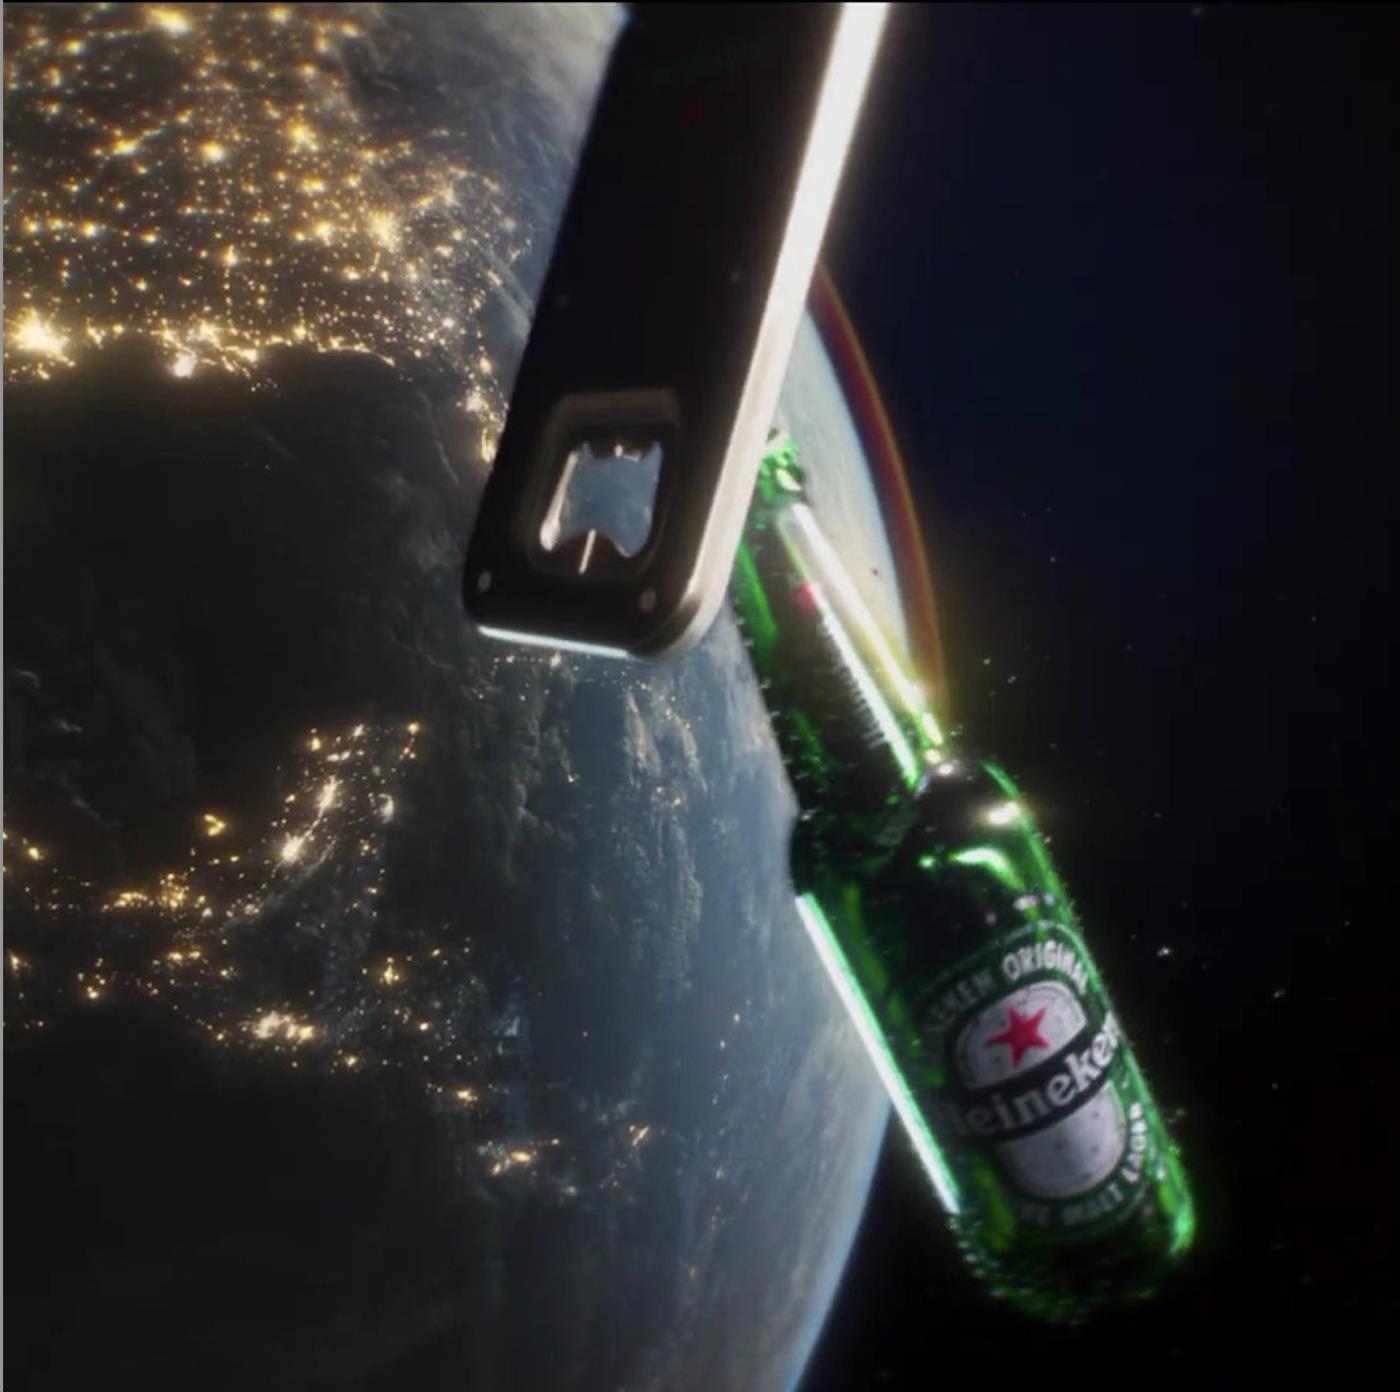 Heineken: The Closer